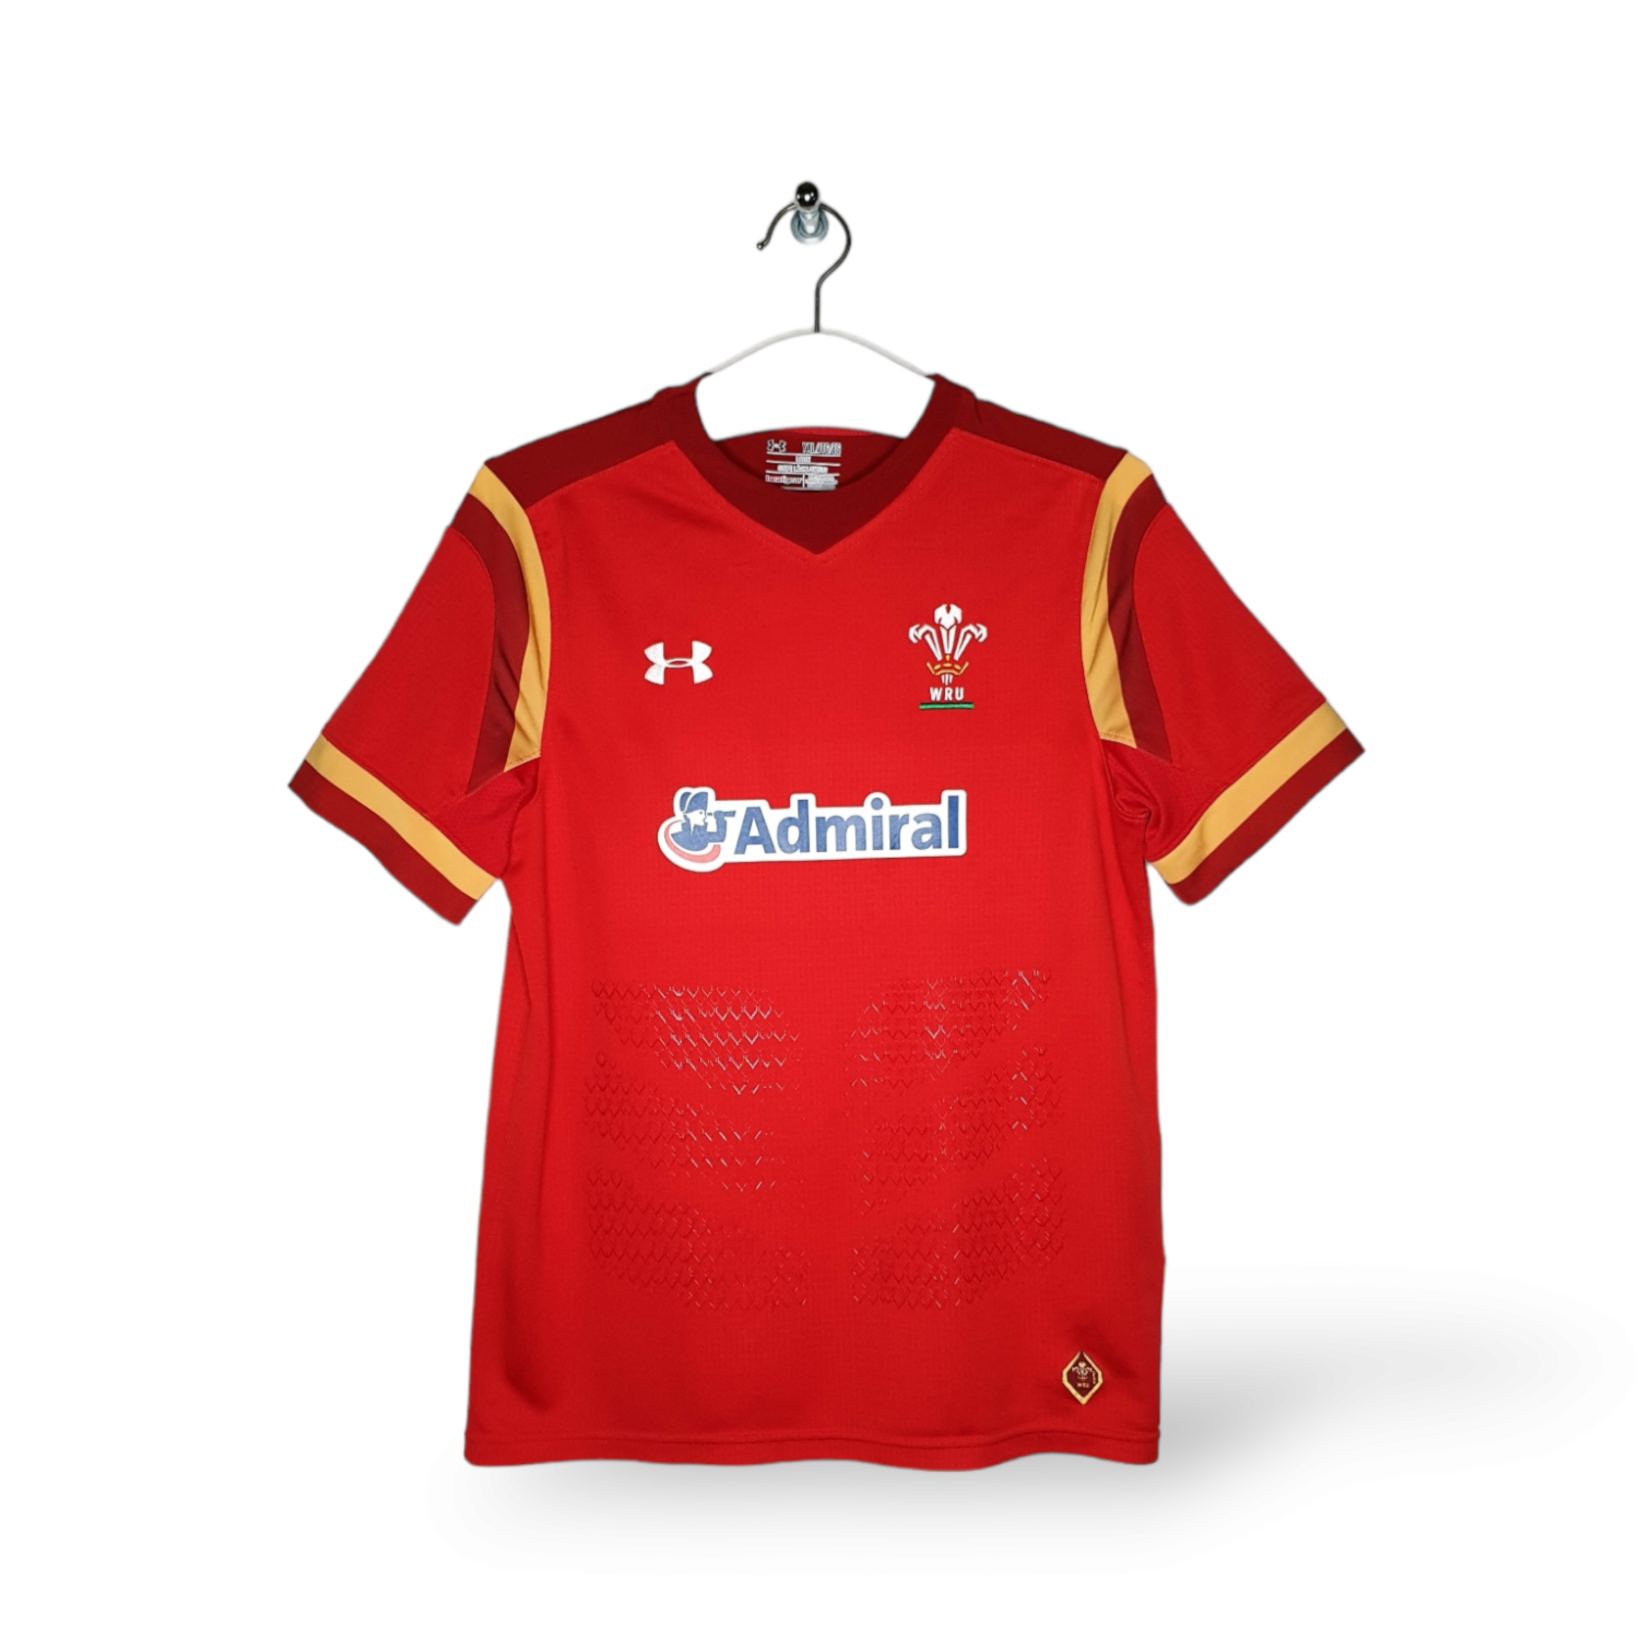 geleider boezem Snel Under Armour rugbyshirt WRU Wales 2015/16 - We Love Sport Vintage